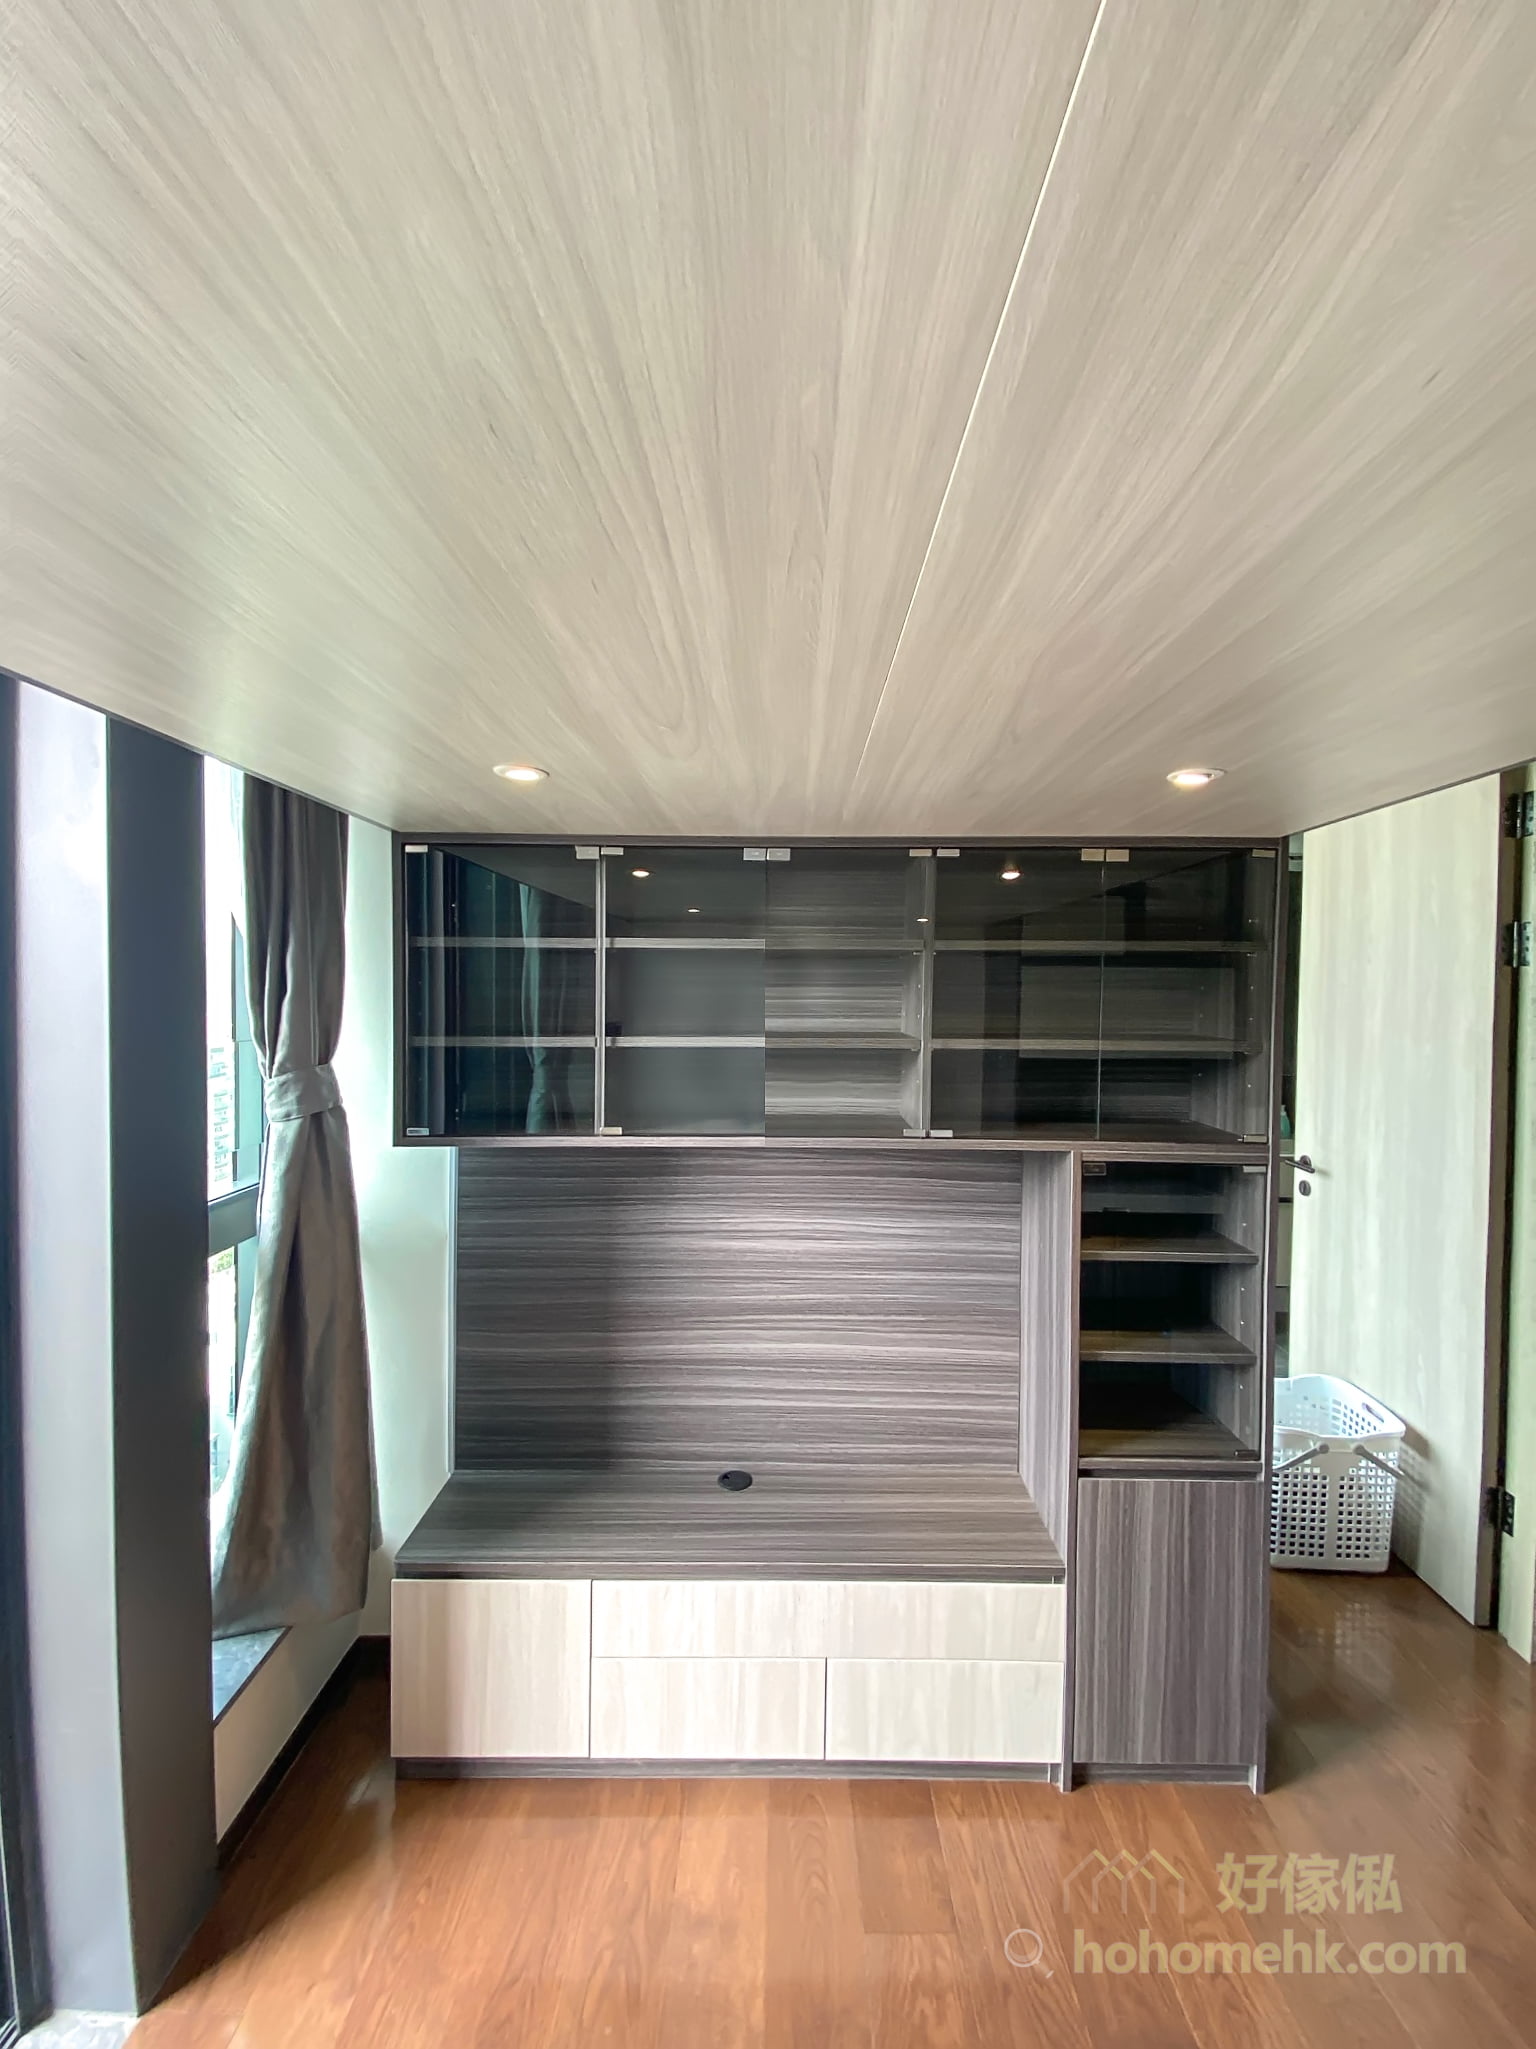 整個夾層與儲物櫃用了深淺不同的暖木色，為小空間打造出層次感與設計感